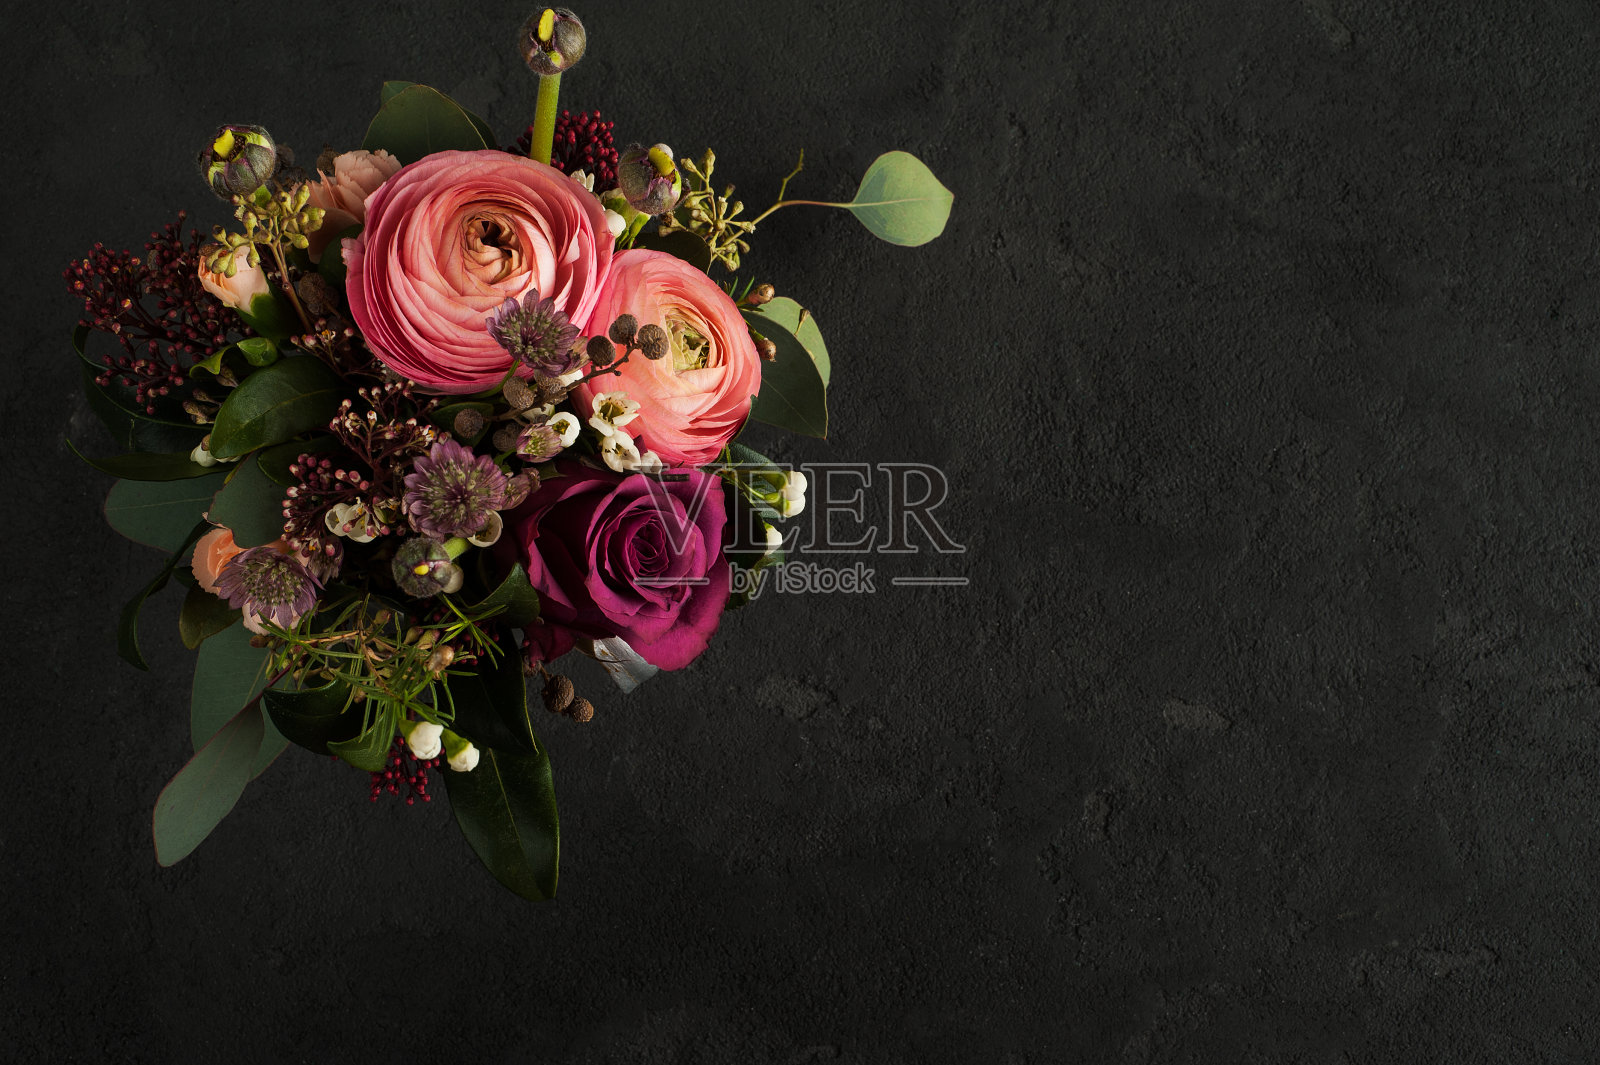 玫瑰和毛茛的插花照片摄影图片